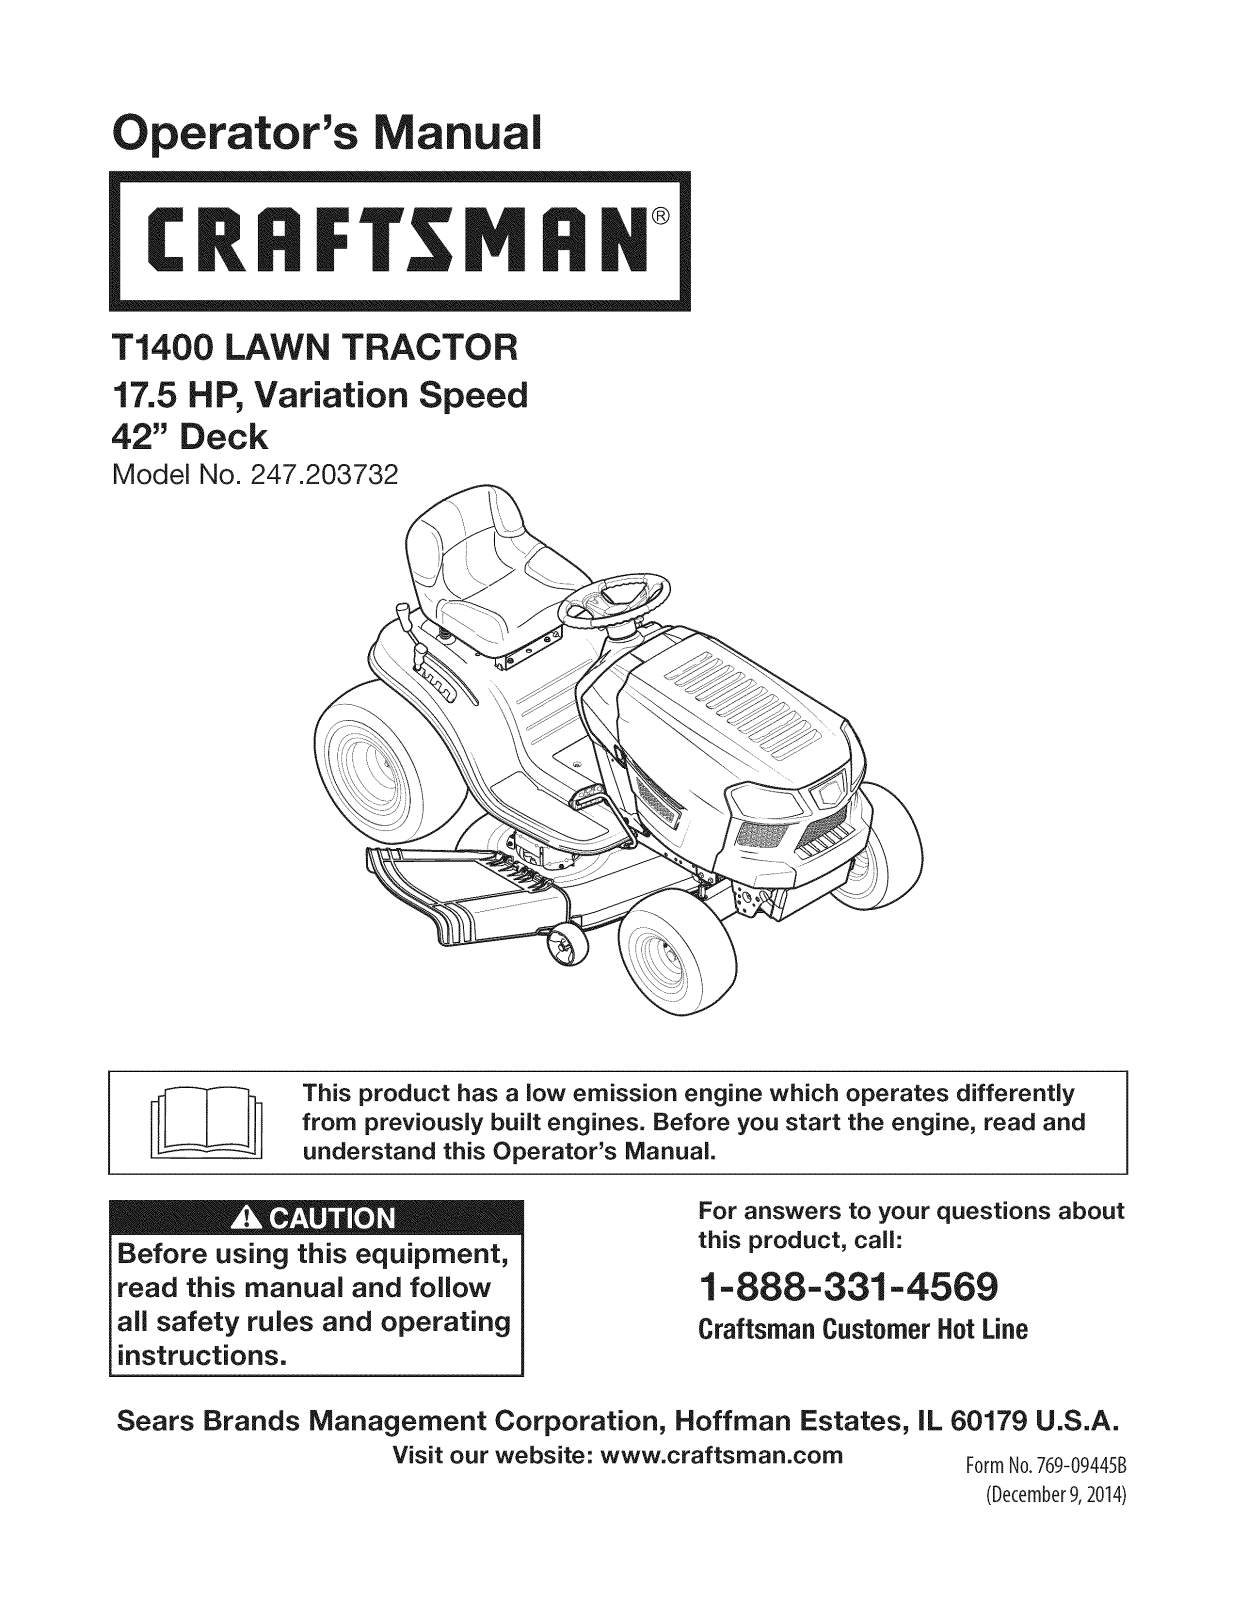 Craftsman 247.203732 User Manual